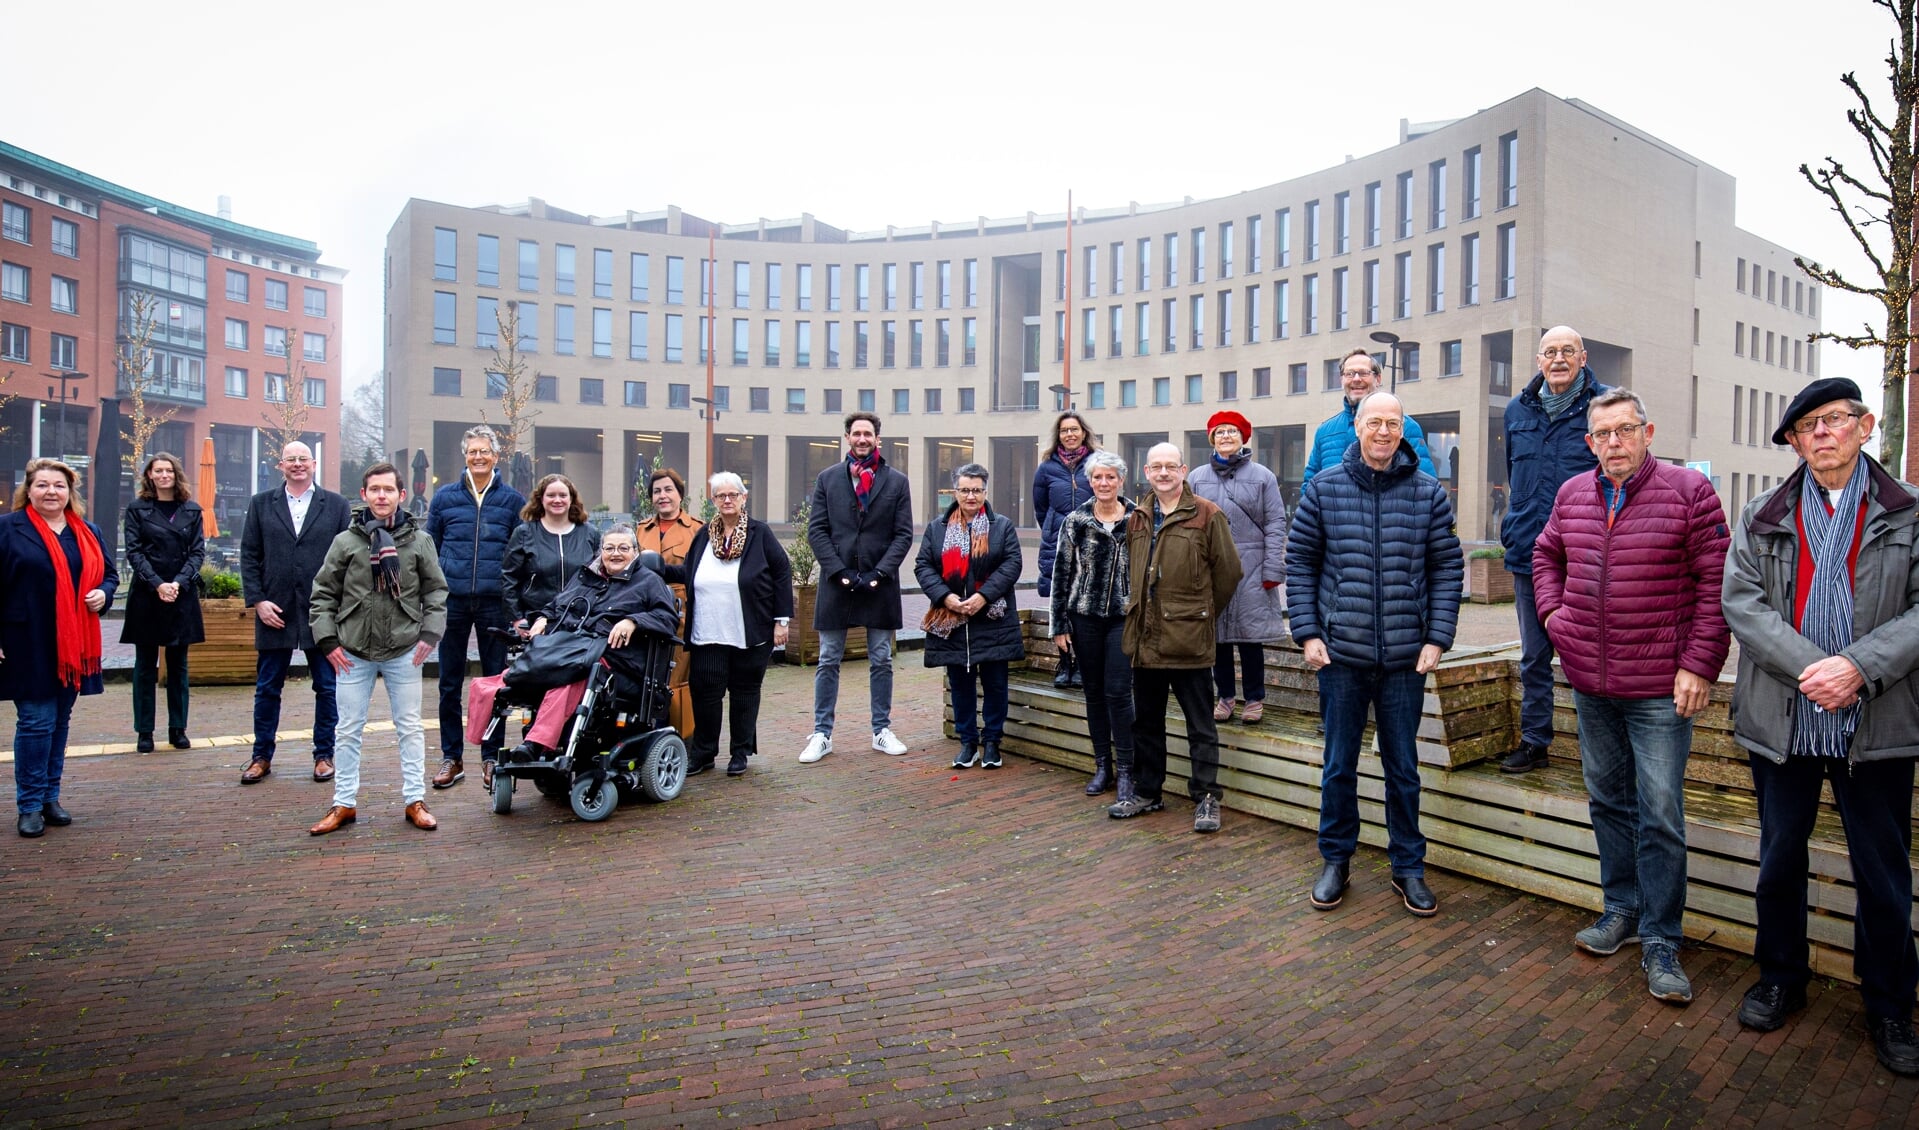 Bijna alle kandidaten van Pvda-GroenLinks op het Koningsplein. (Foto is gefotoshopt, dus coronaproof gemaakt)